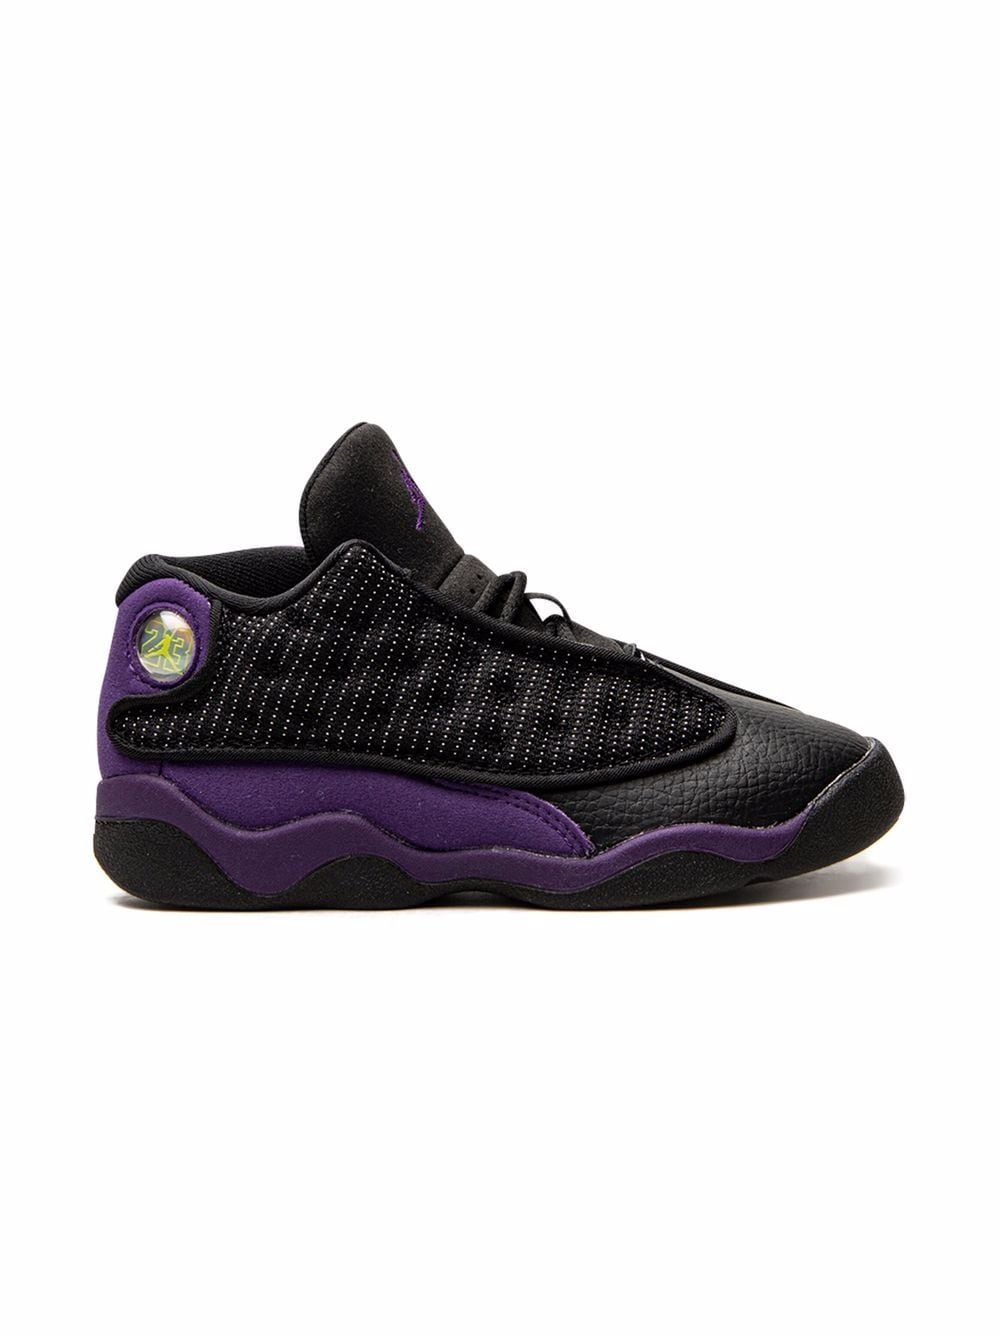 Image 2 of Jordan Kids Air Jordan 13 Retro "Court Purple" sneakers